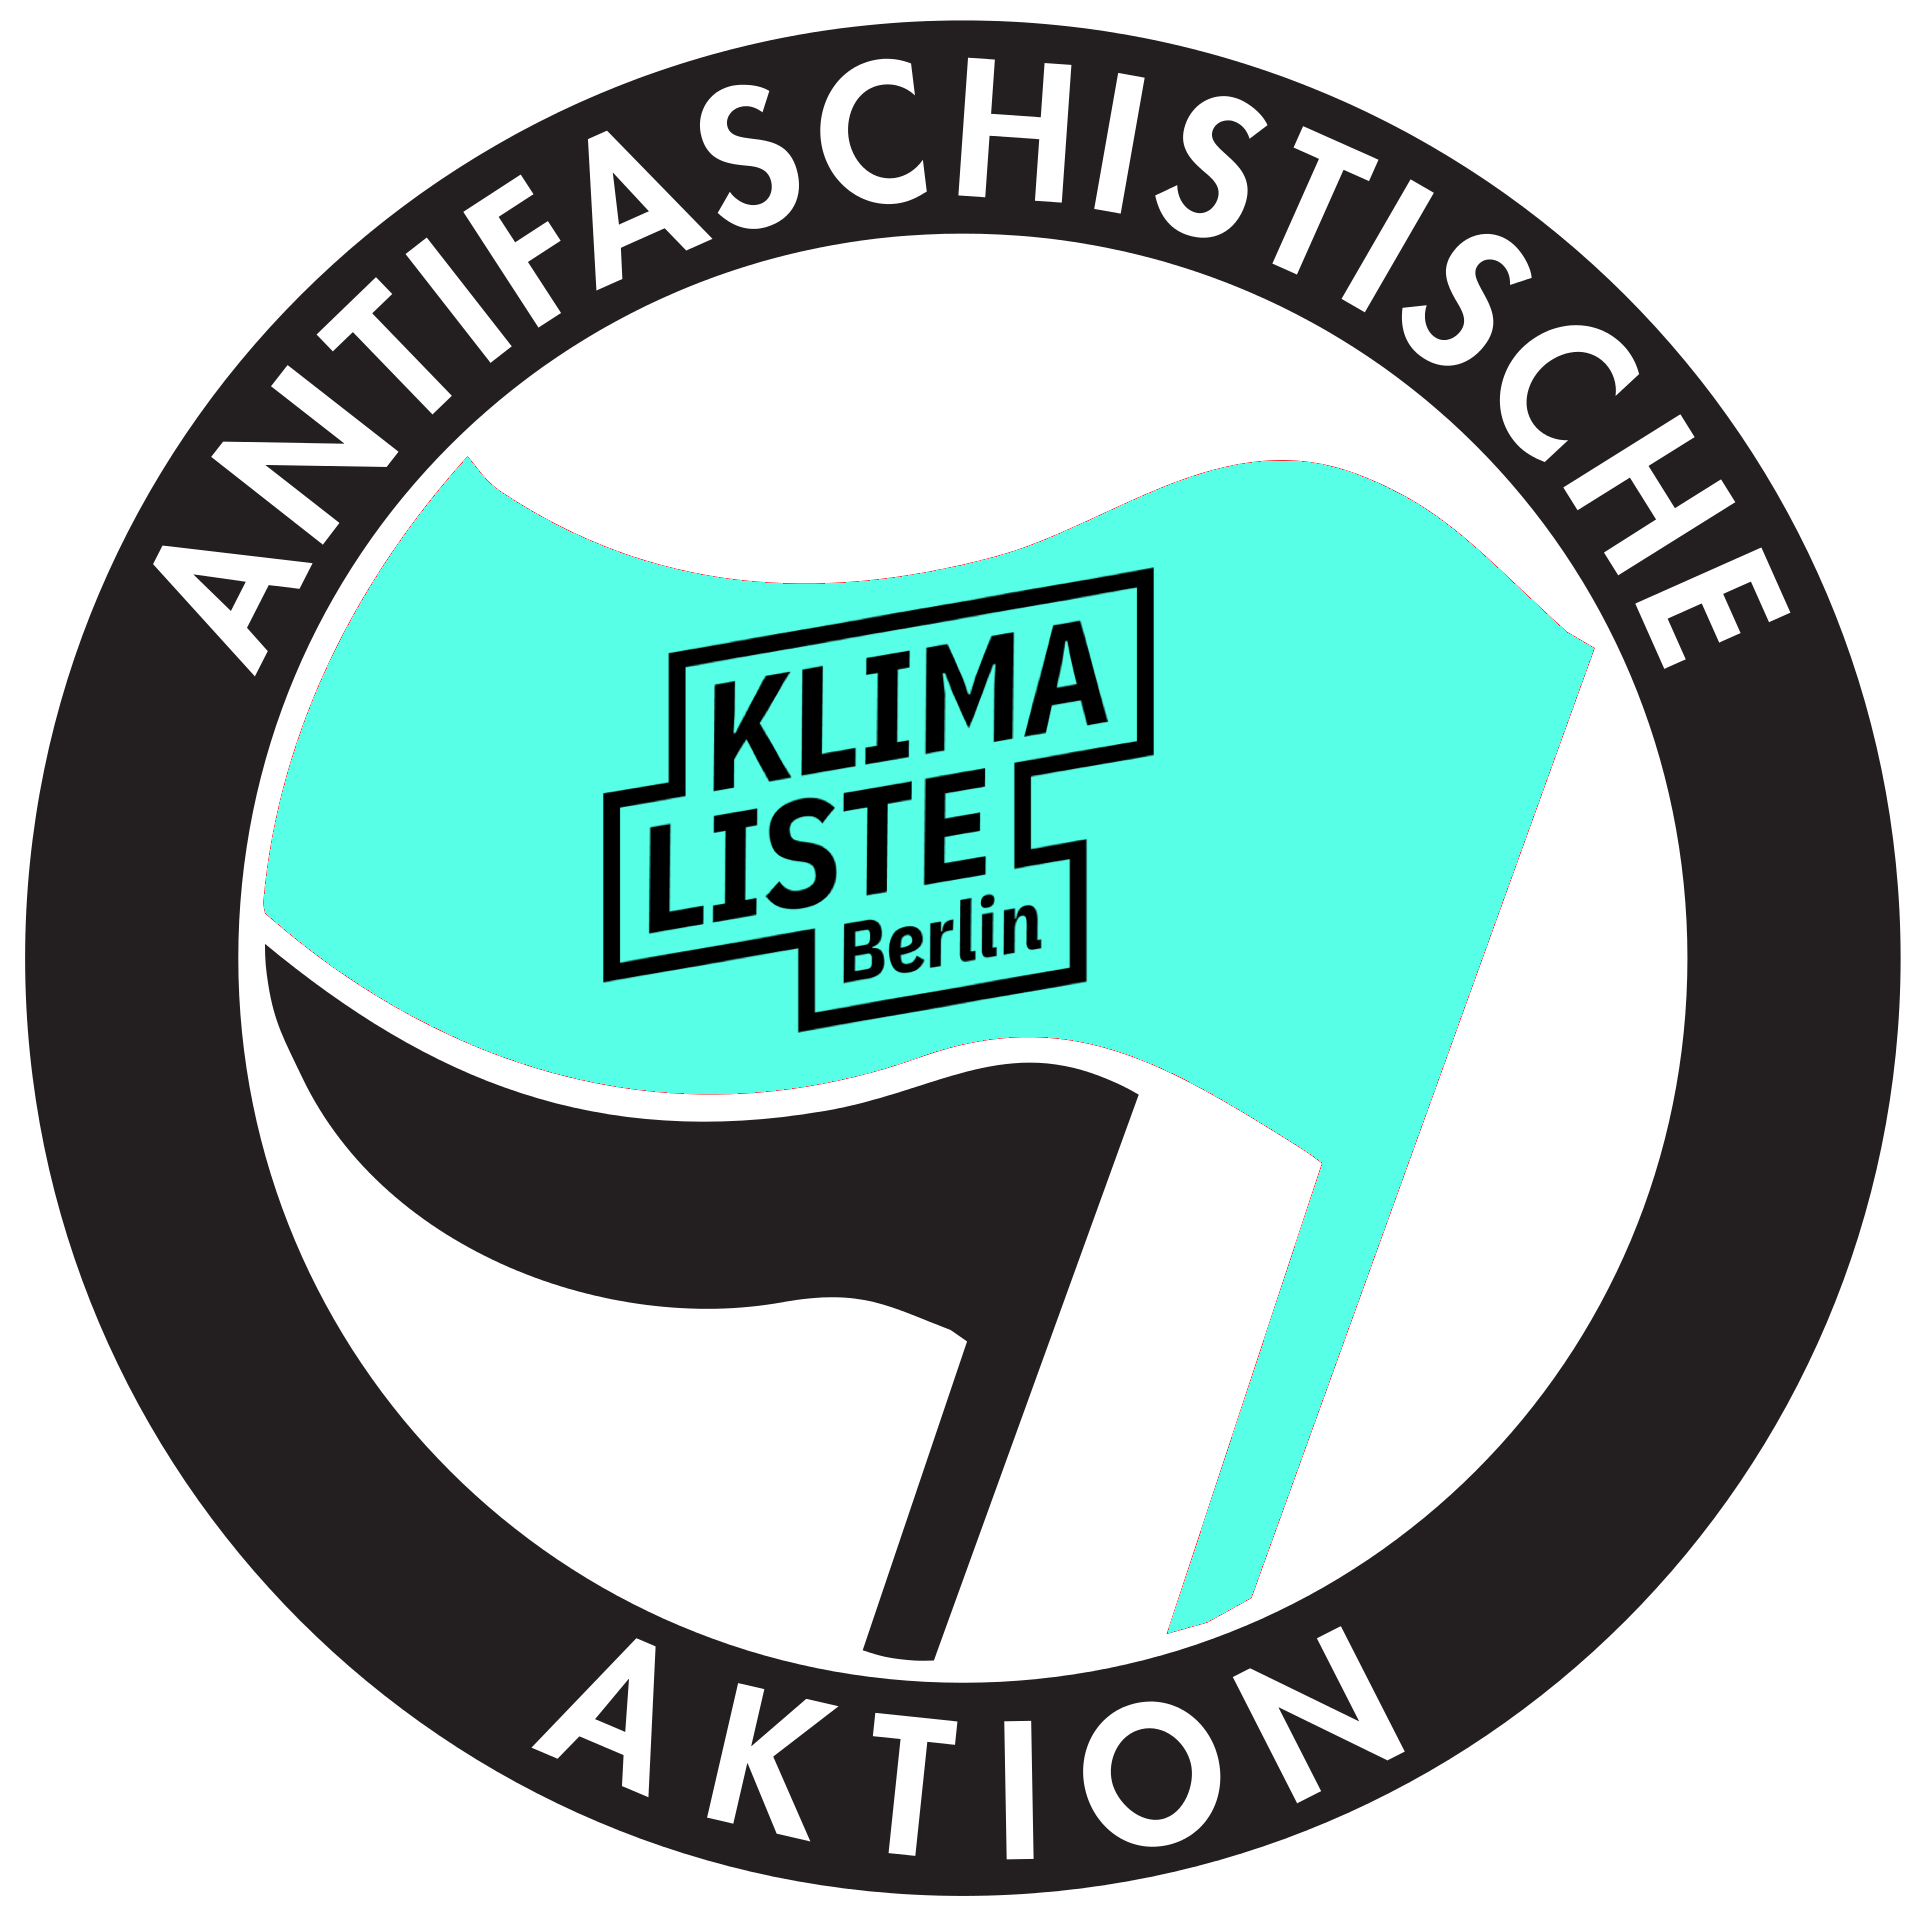 Antifaschistische Aktion Klimaliste Berlin